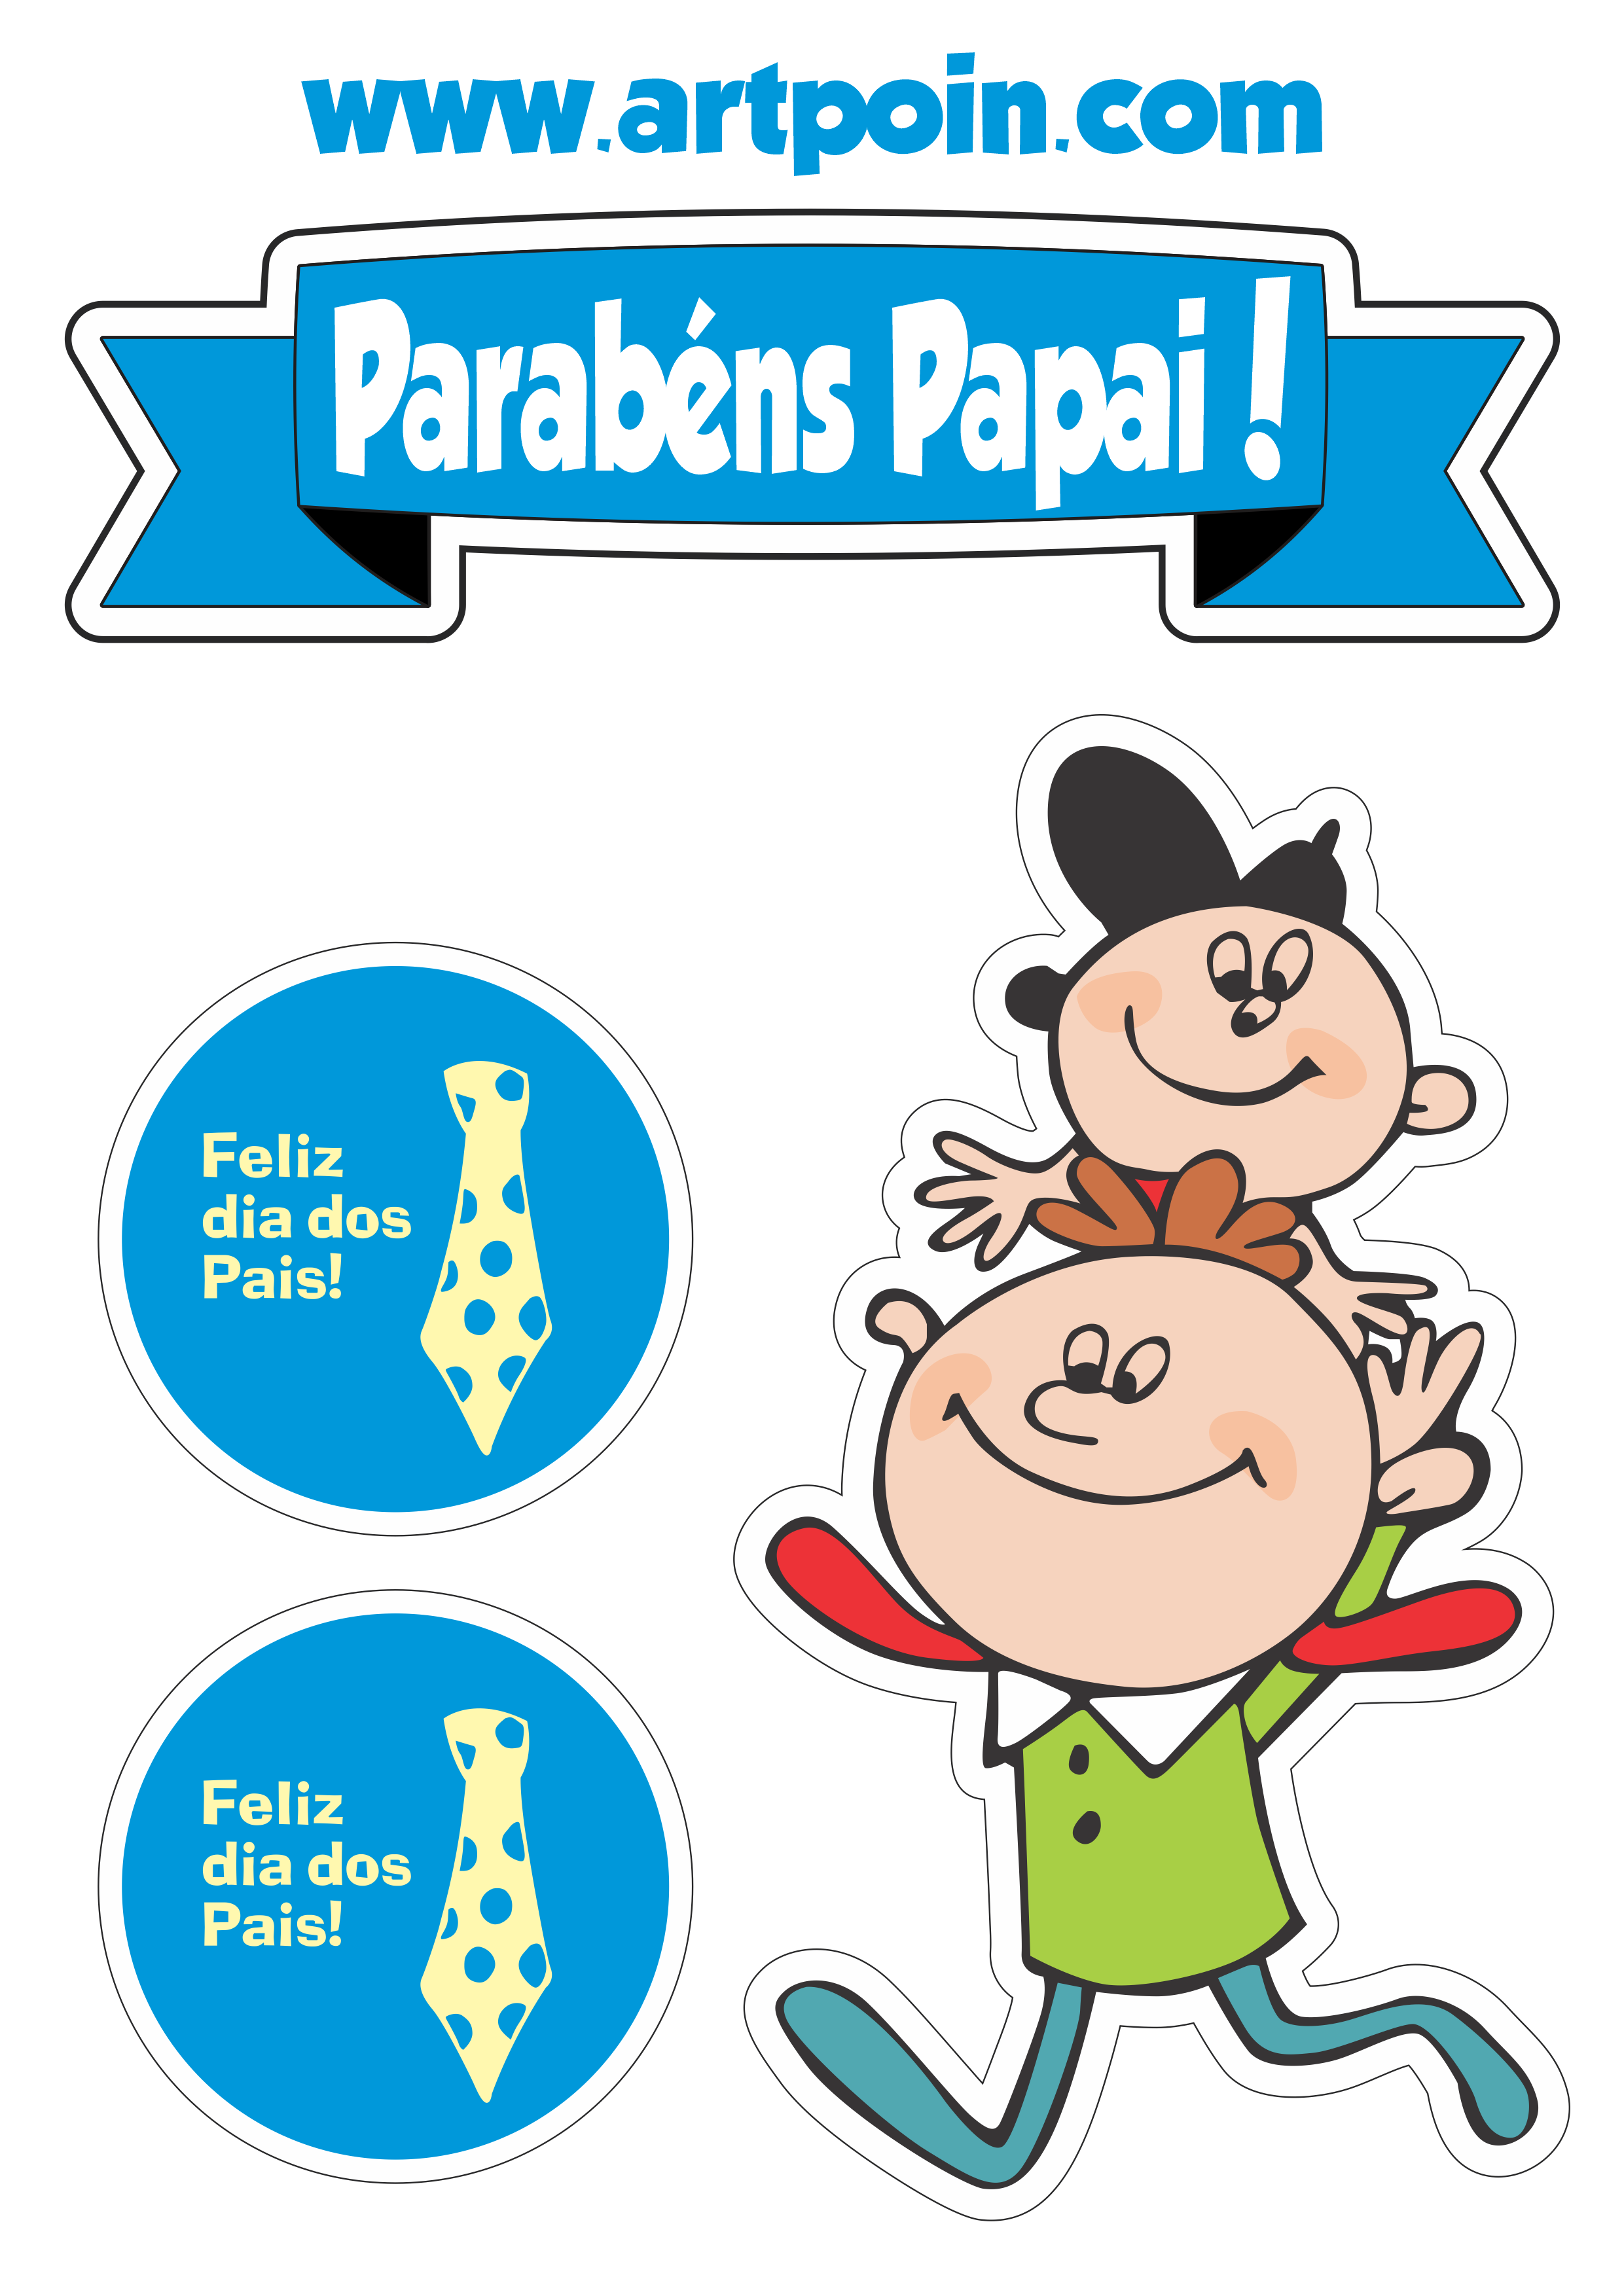 parabens-papai